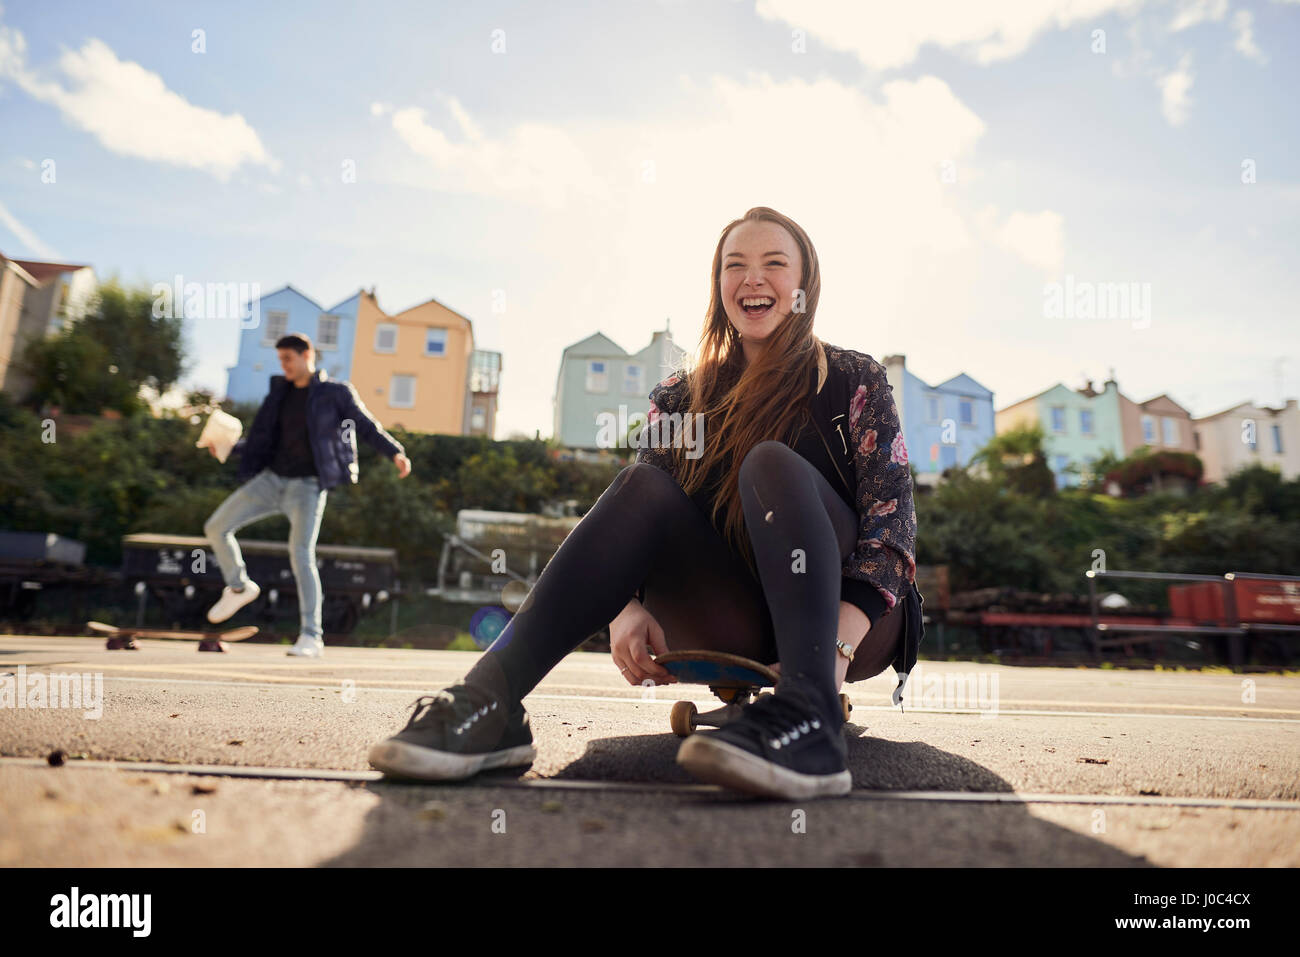 Zwei Freunde herumalbern im Freien, junge Frau sitzt auf Skateboard, lachen, Bristol, UK Stockfoto